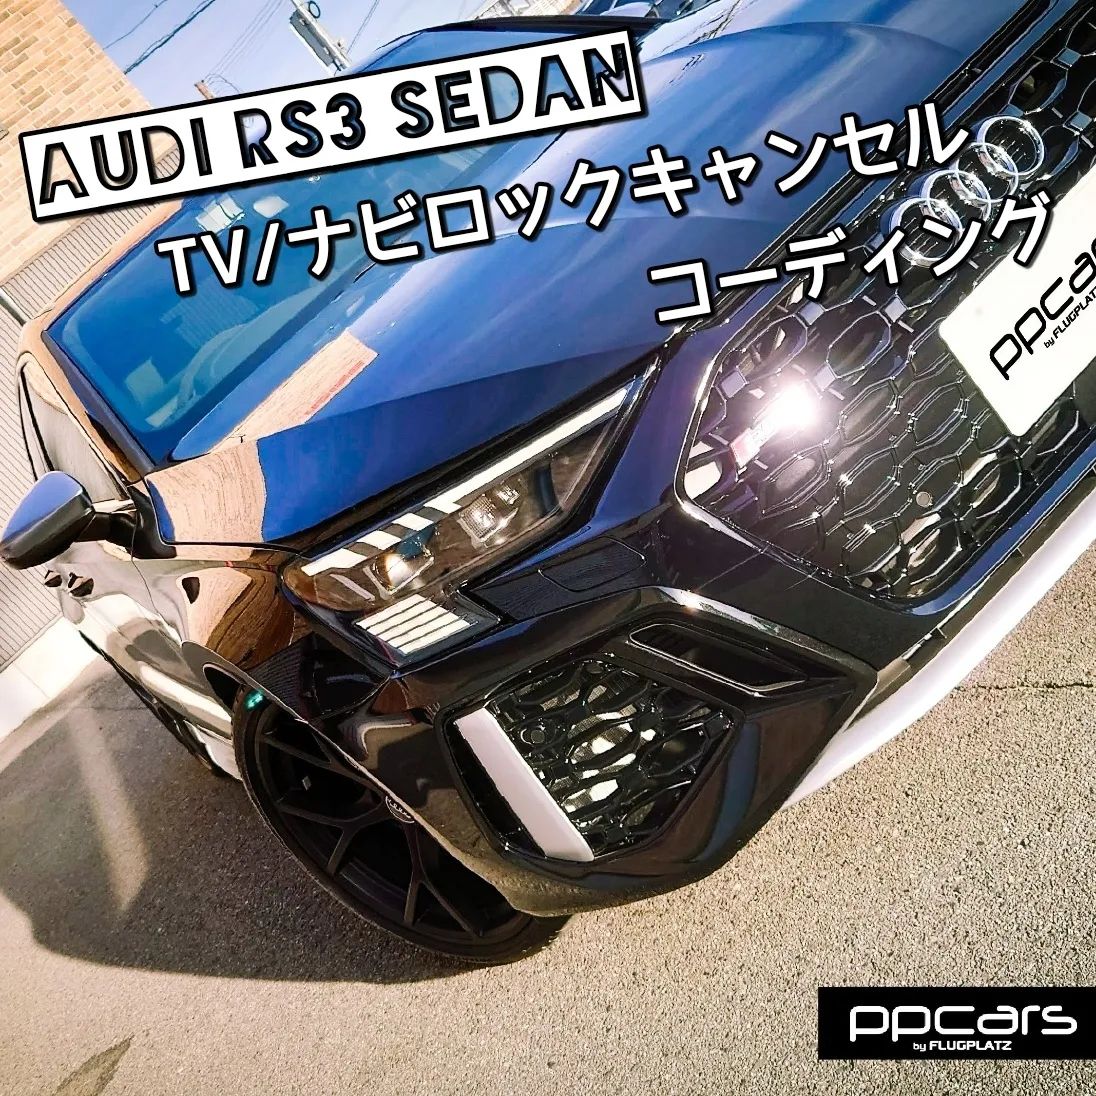 Audi RS3 (8Y) Sedan x コーディング (TVキャンセル/ナビキャンセル)